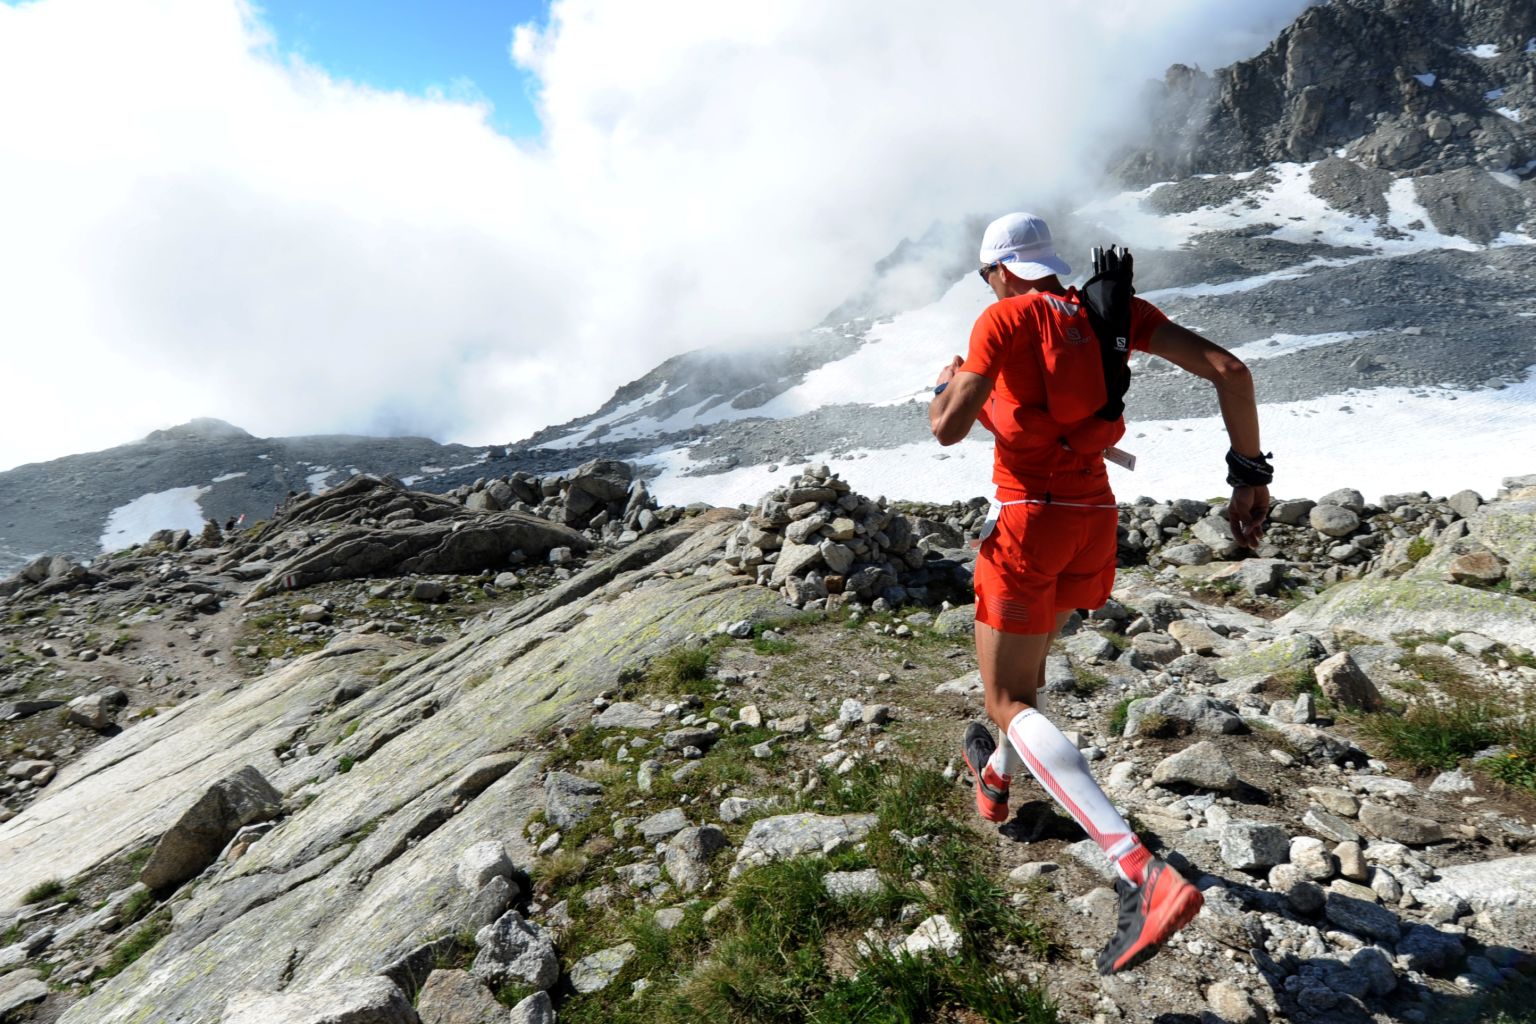 Jules-Henri Gabioud en train de courir dans une descente sur une montagne valaisanne. trail running Valais Wallis Schweiz Suisse